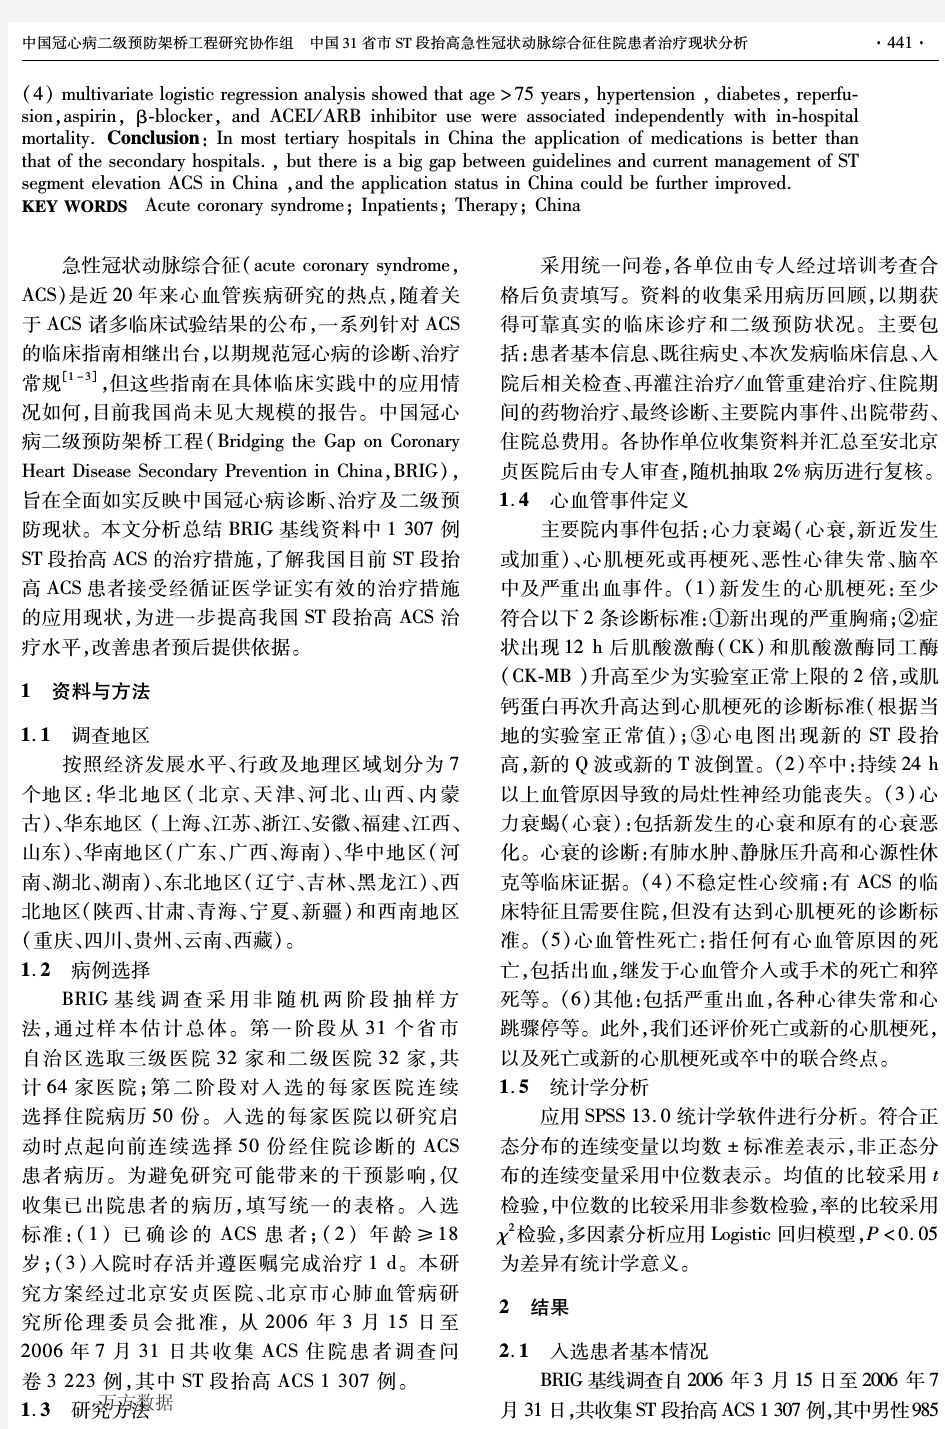 (    )中国31省市ST段抬高急性冠状动脉综合征住院患者治疗现状分析